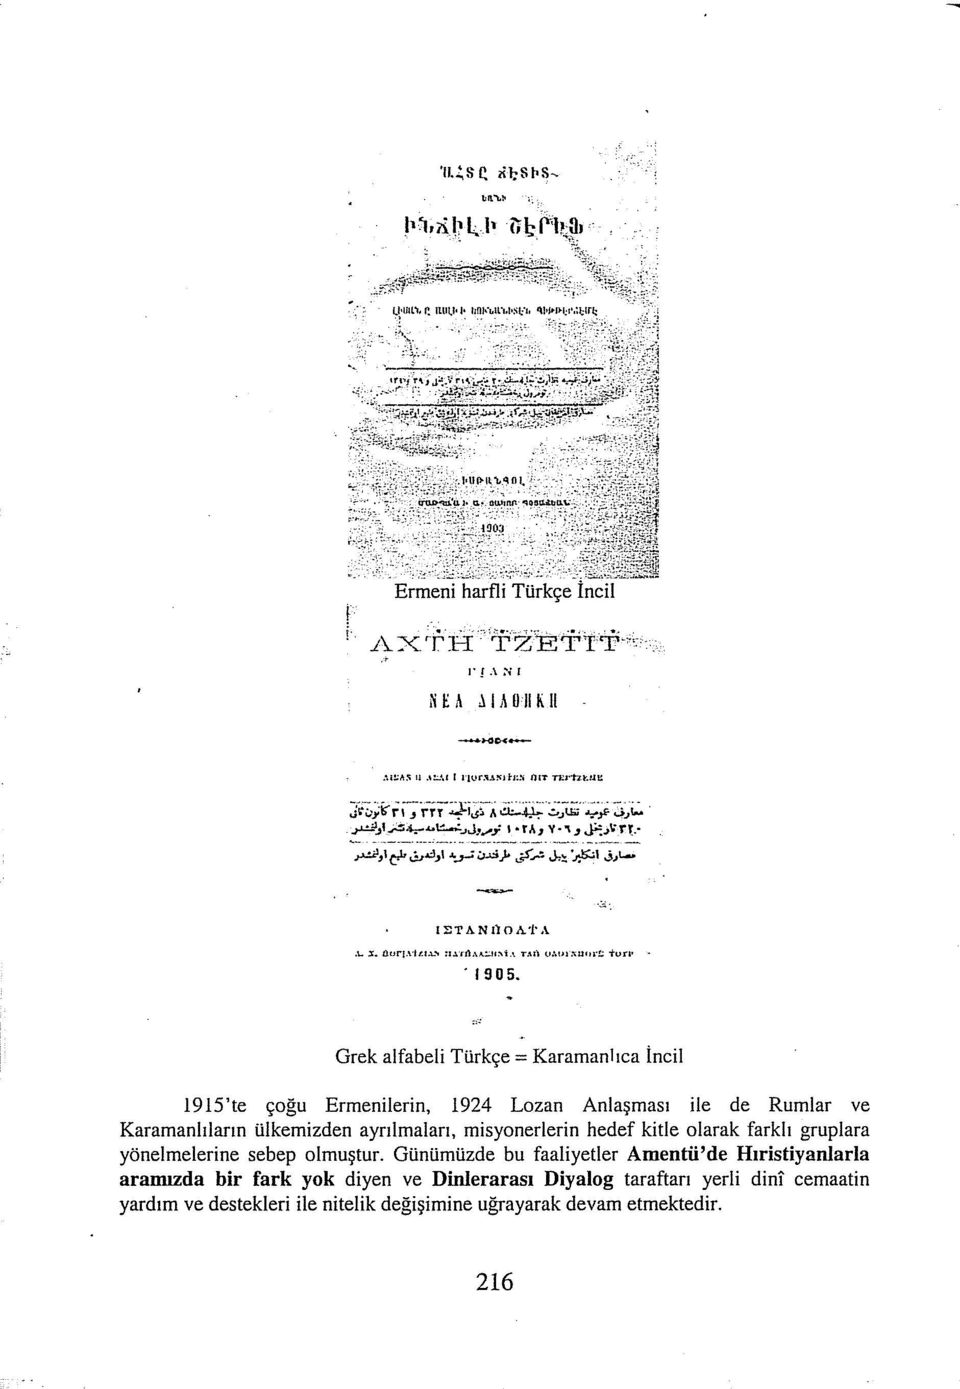 Grek alfabeli Türkçe= Karamanlıca İncil 1915'te çoğu Ermenilerin, 1924 Lozan Anlaşması ile de Rumlar ve Karamanitların ülkemizden ayrılmaları, misyonerierin hedef kitle